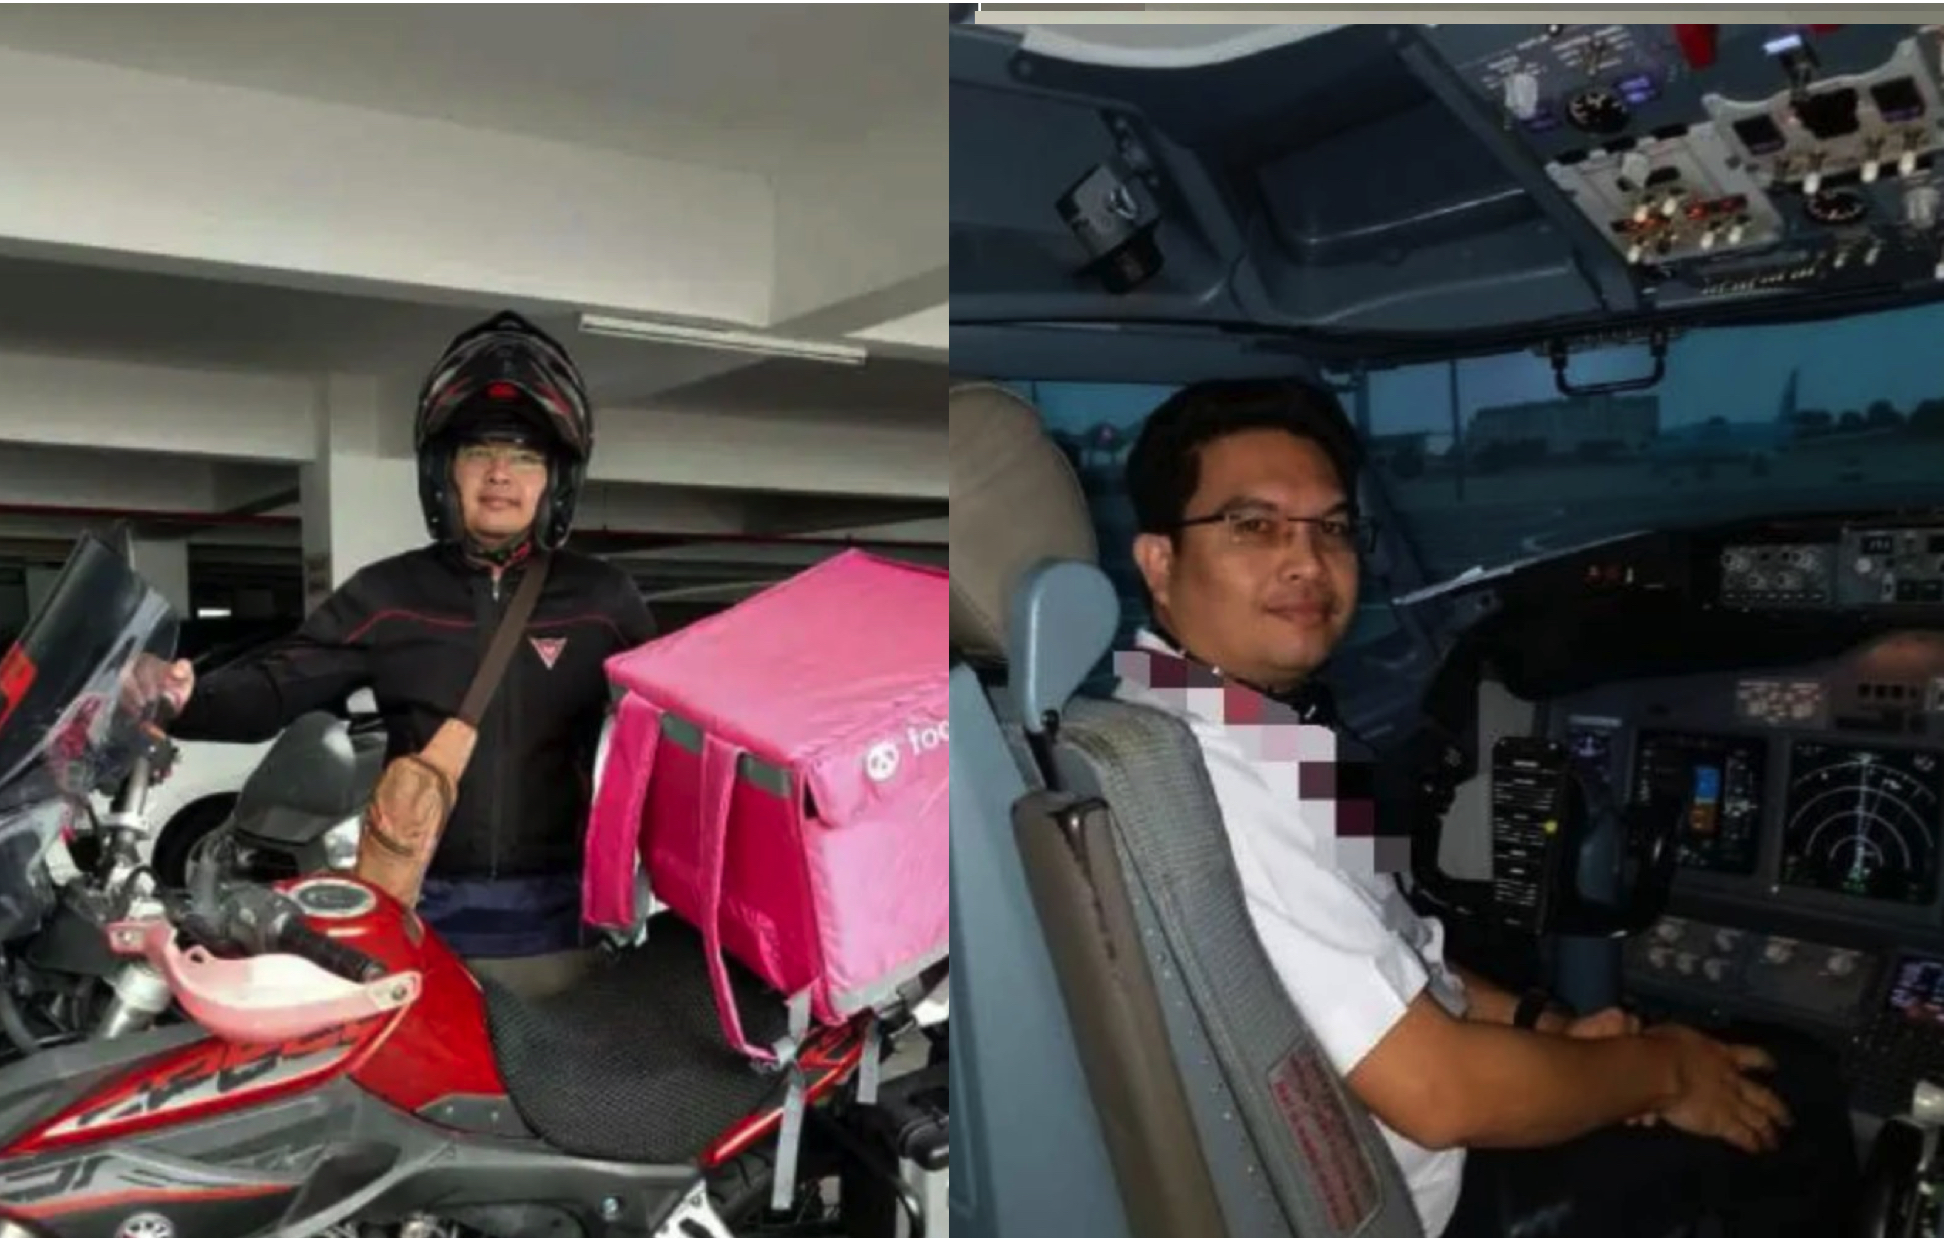 sajaheboh.com - 'Dulu Pilot Di Udara, Kini Pilot Di Darat' - Juruterbang Hilang Pekerjaan Kerana PKP Kini Jadi Rider Food Demi Keluarga